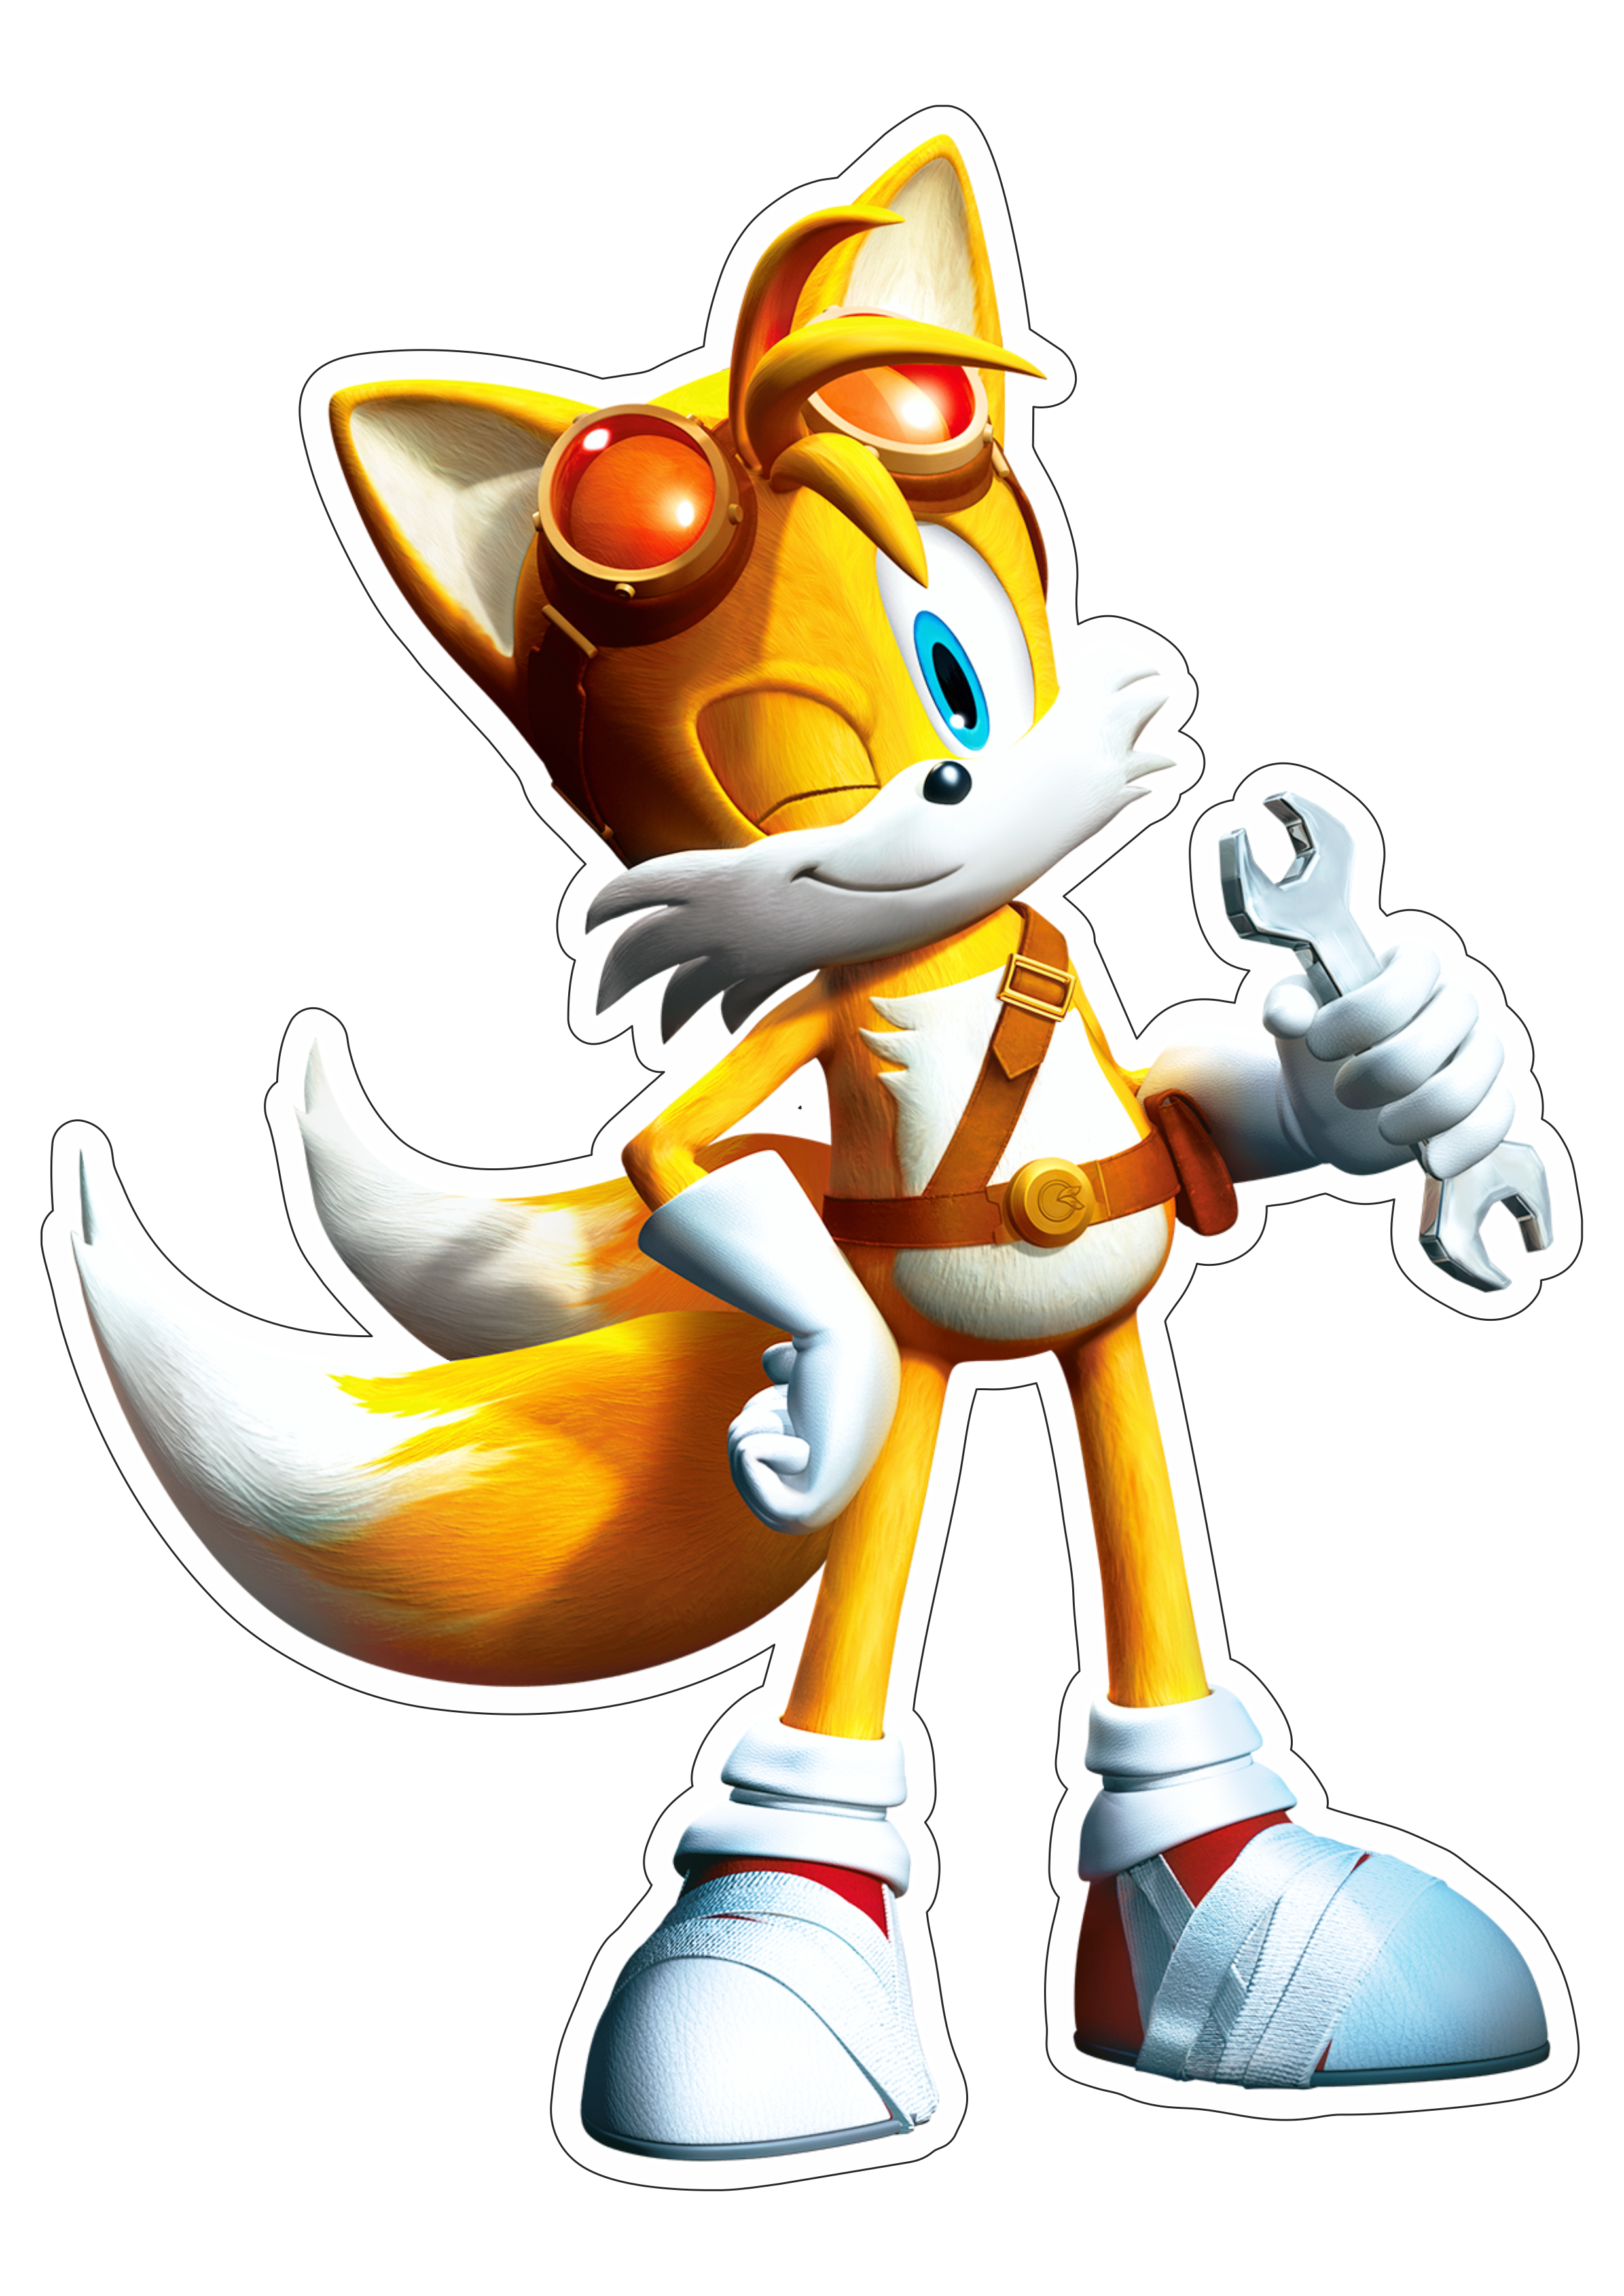 Tails Sonic the hedgehog personagem de game raposinha imagem png